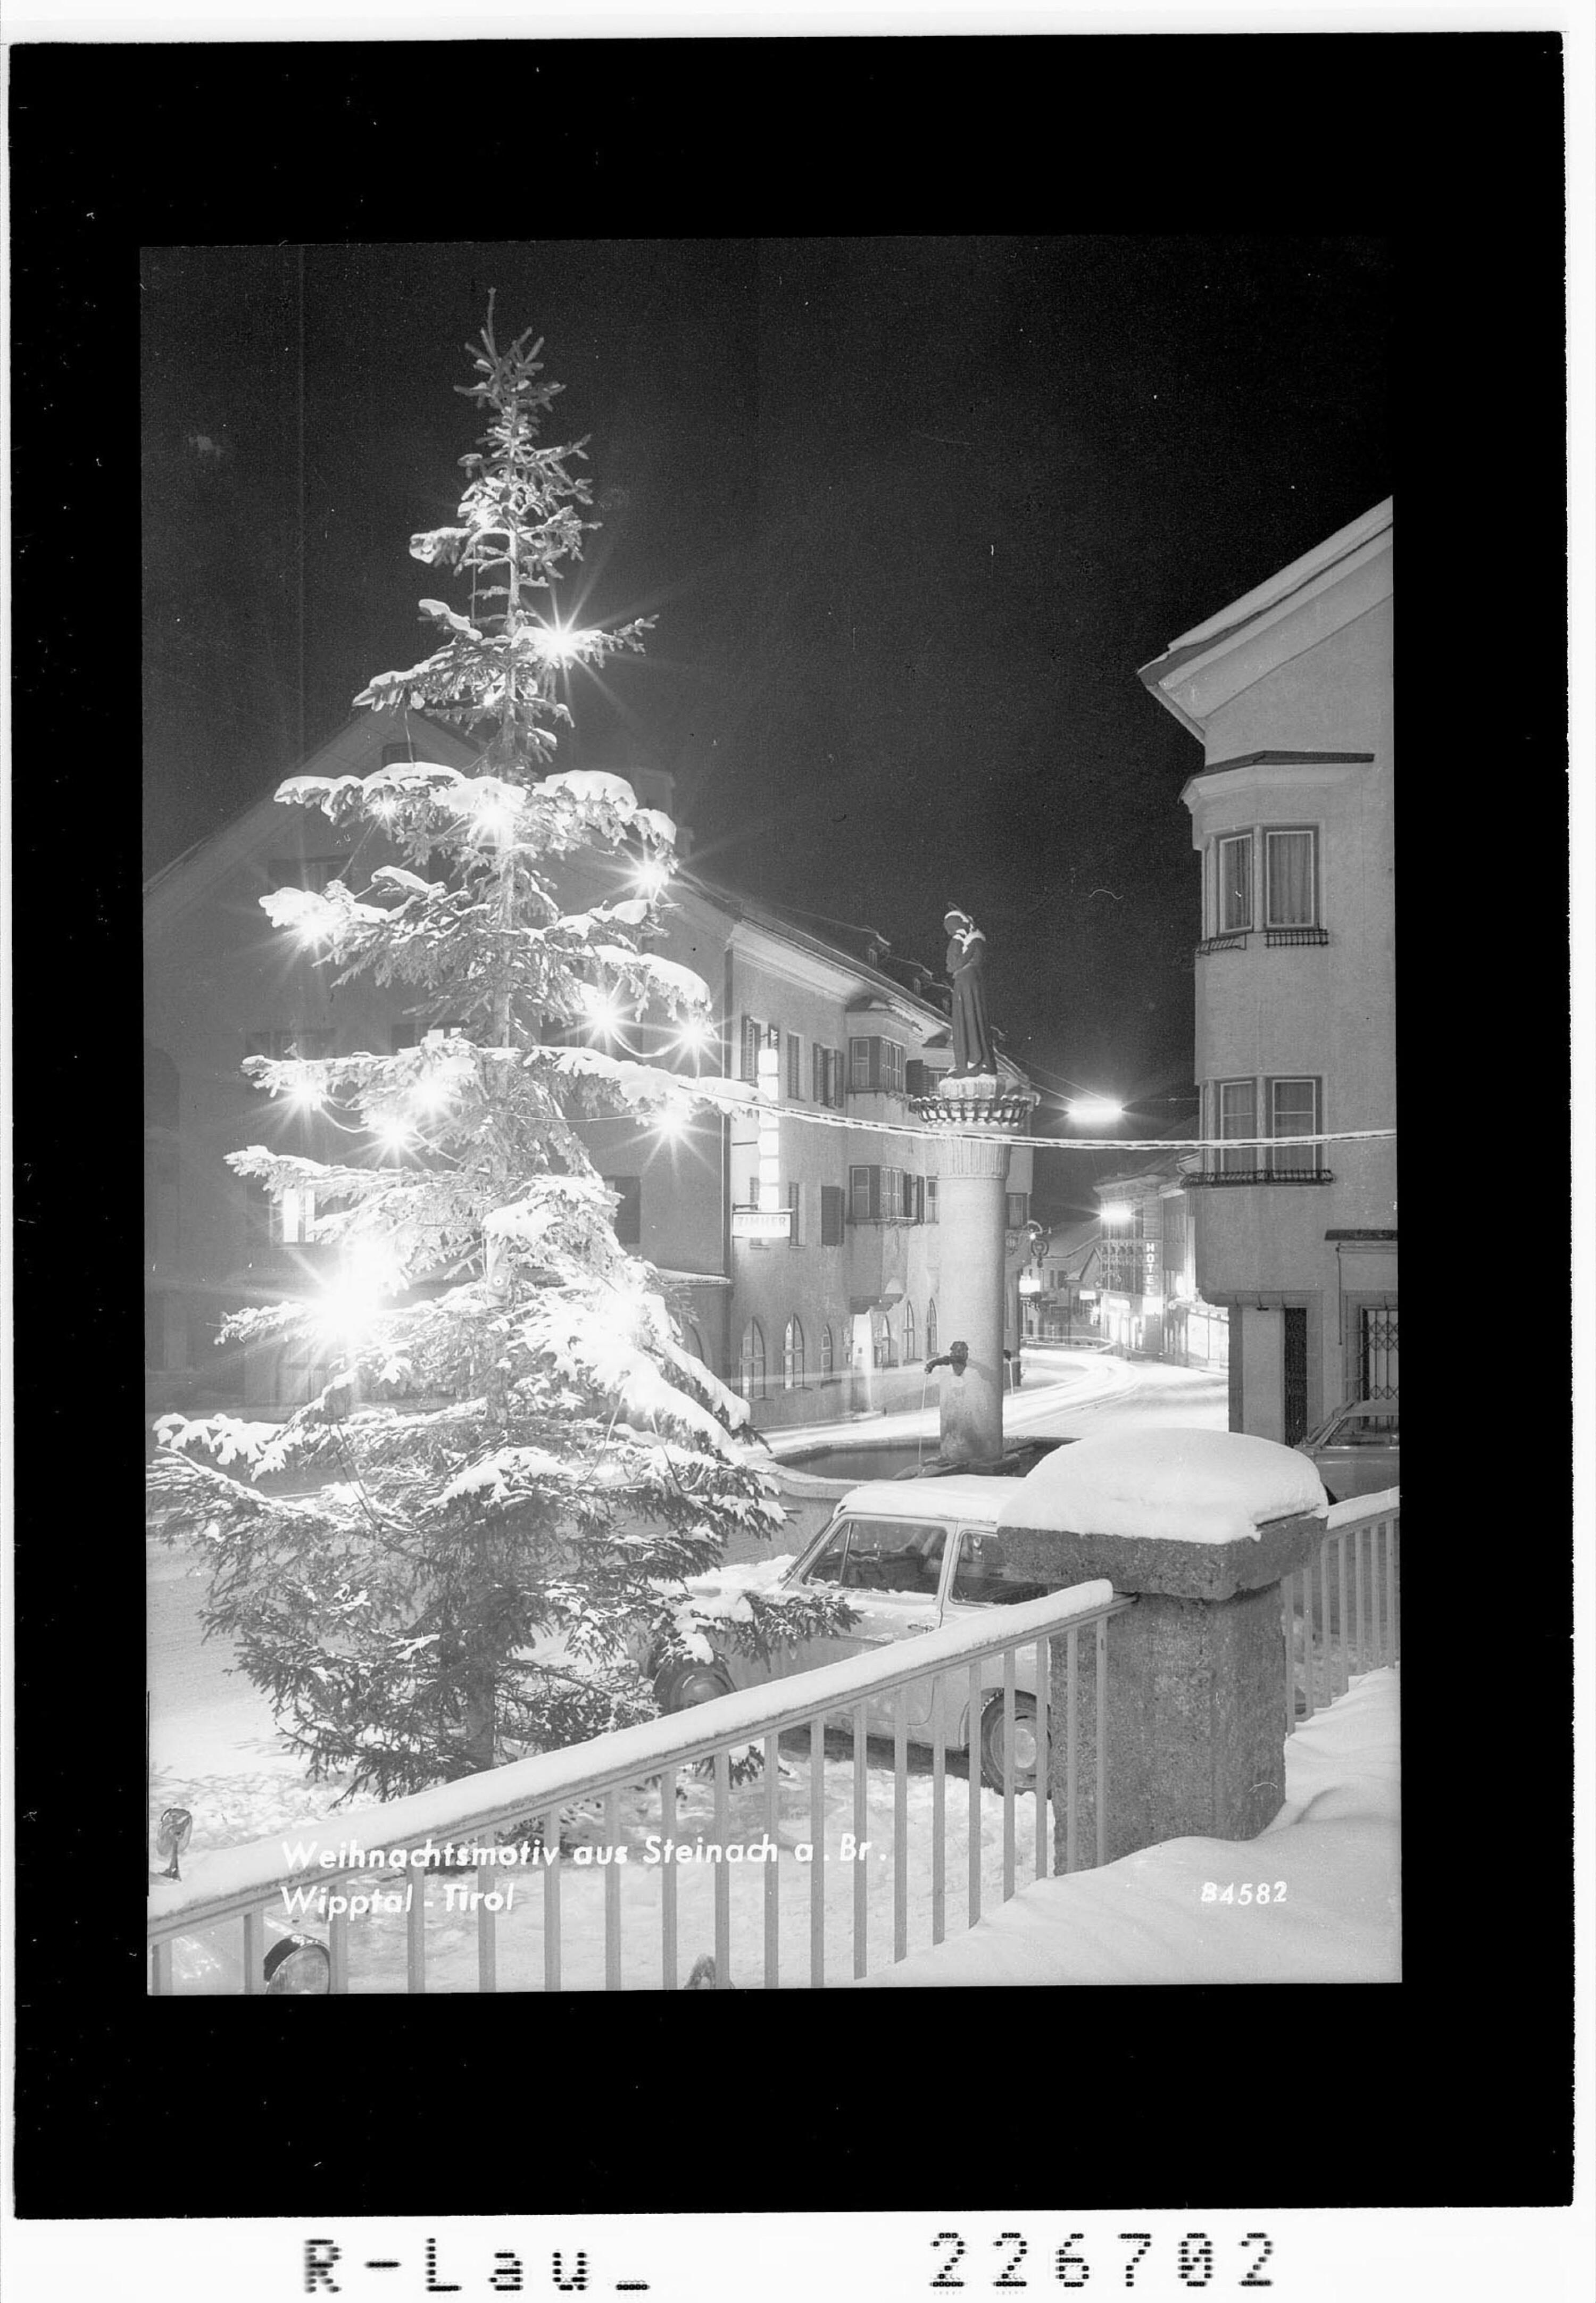 Weihnachtsmotiv aus Steinach am Brenner / Wipptal - Tirol></div>


    <hr>
    <div class=